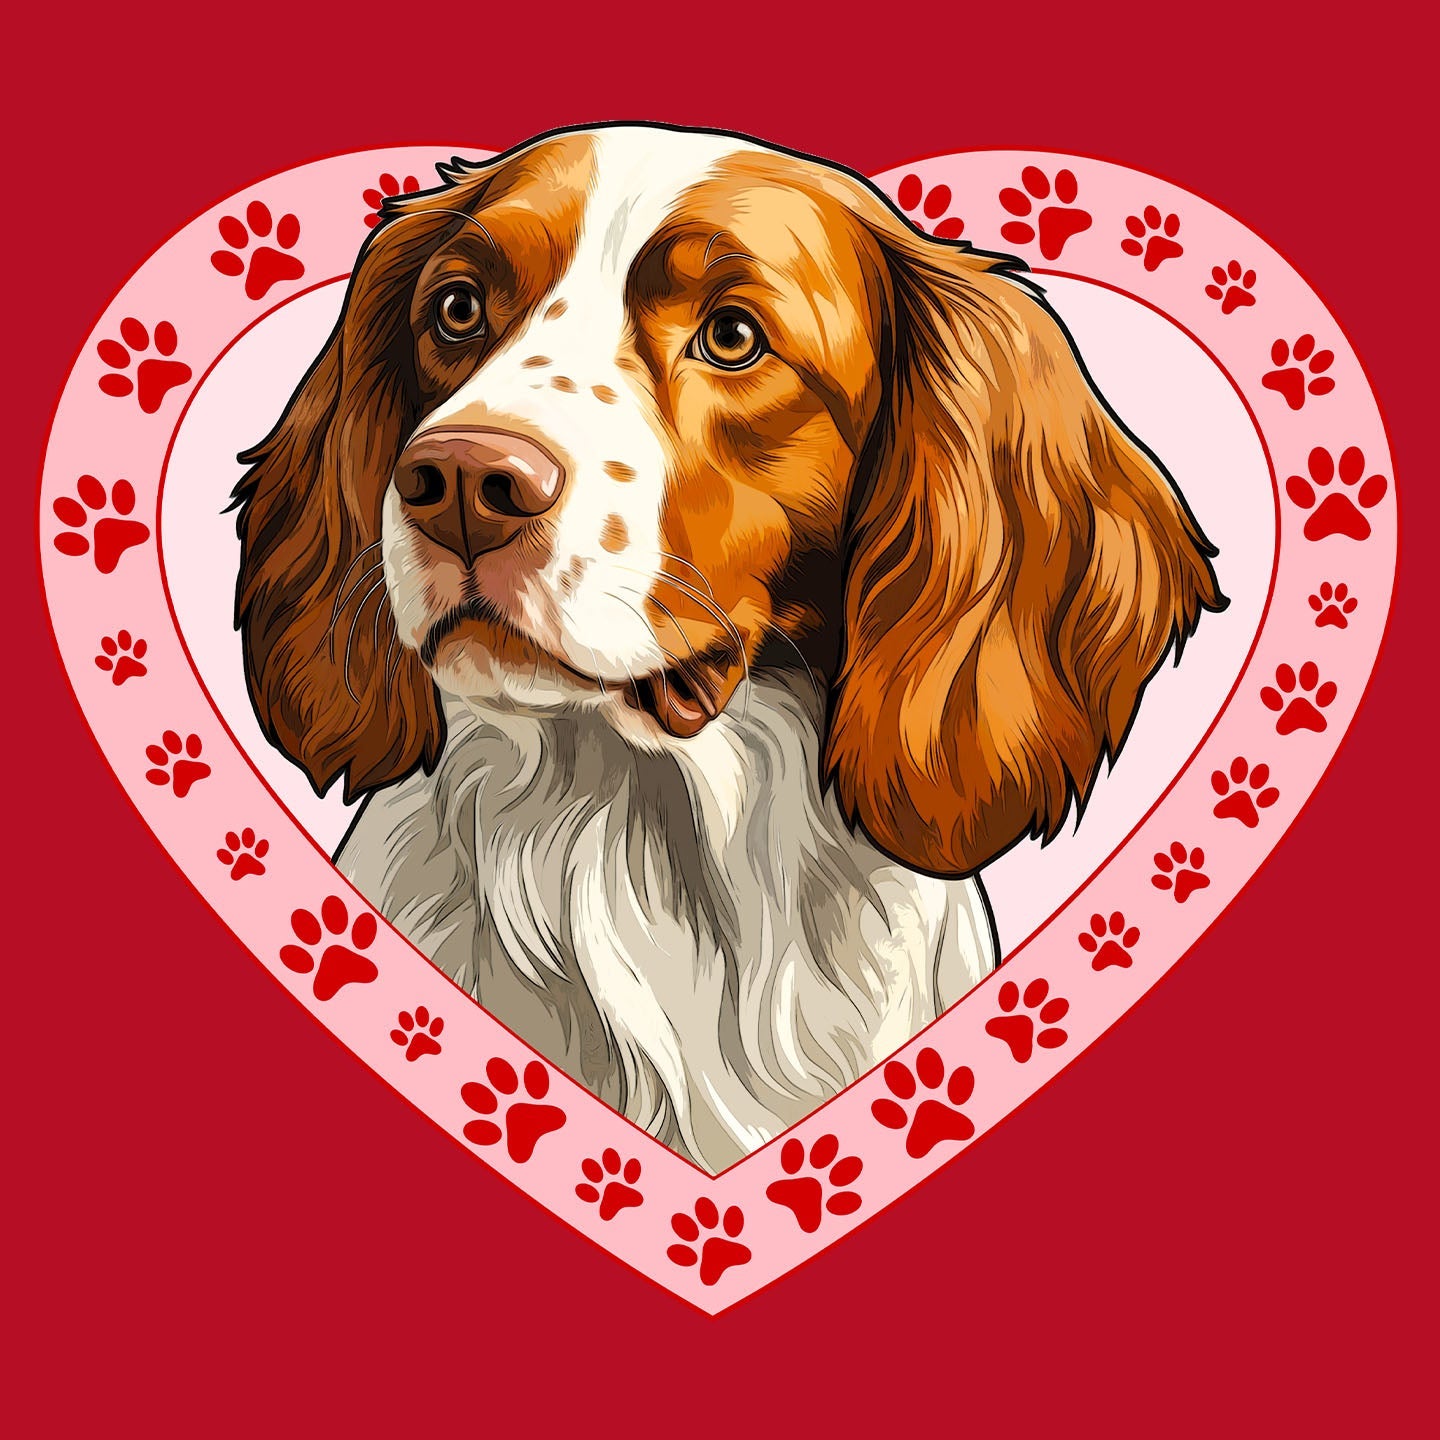 Irish Red and White Setter Illustration In Heart - Women's V-Neck T-Shirt